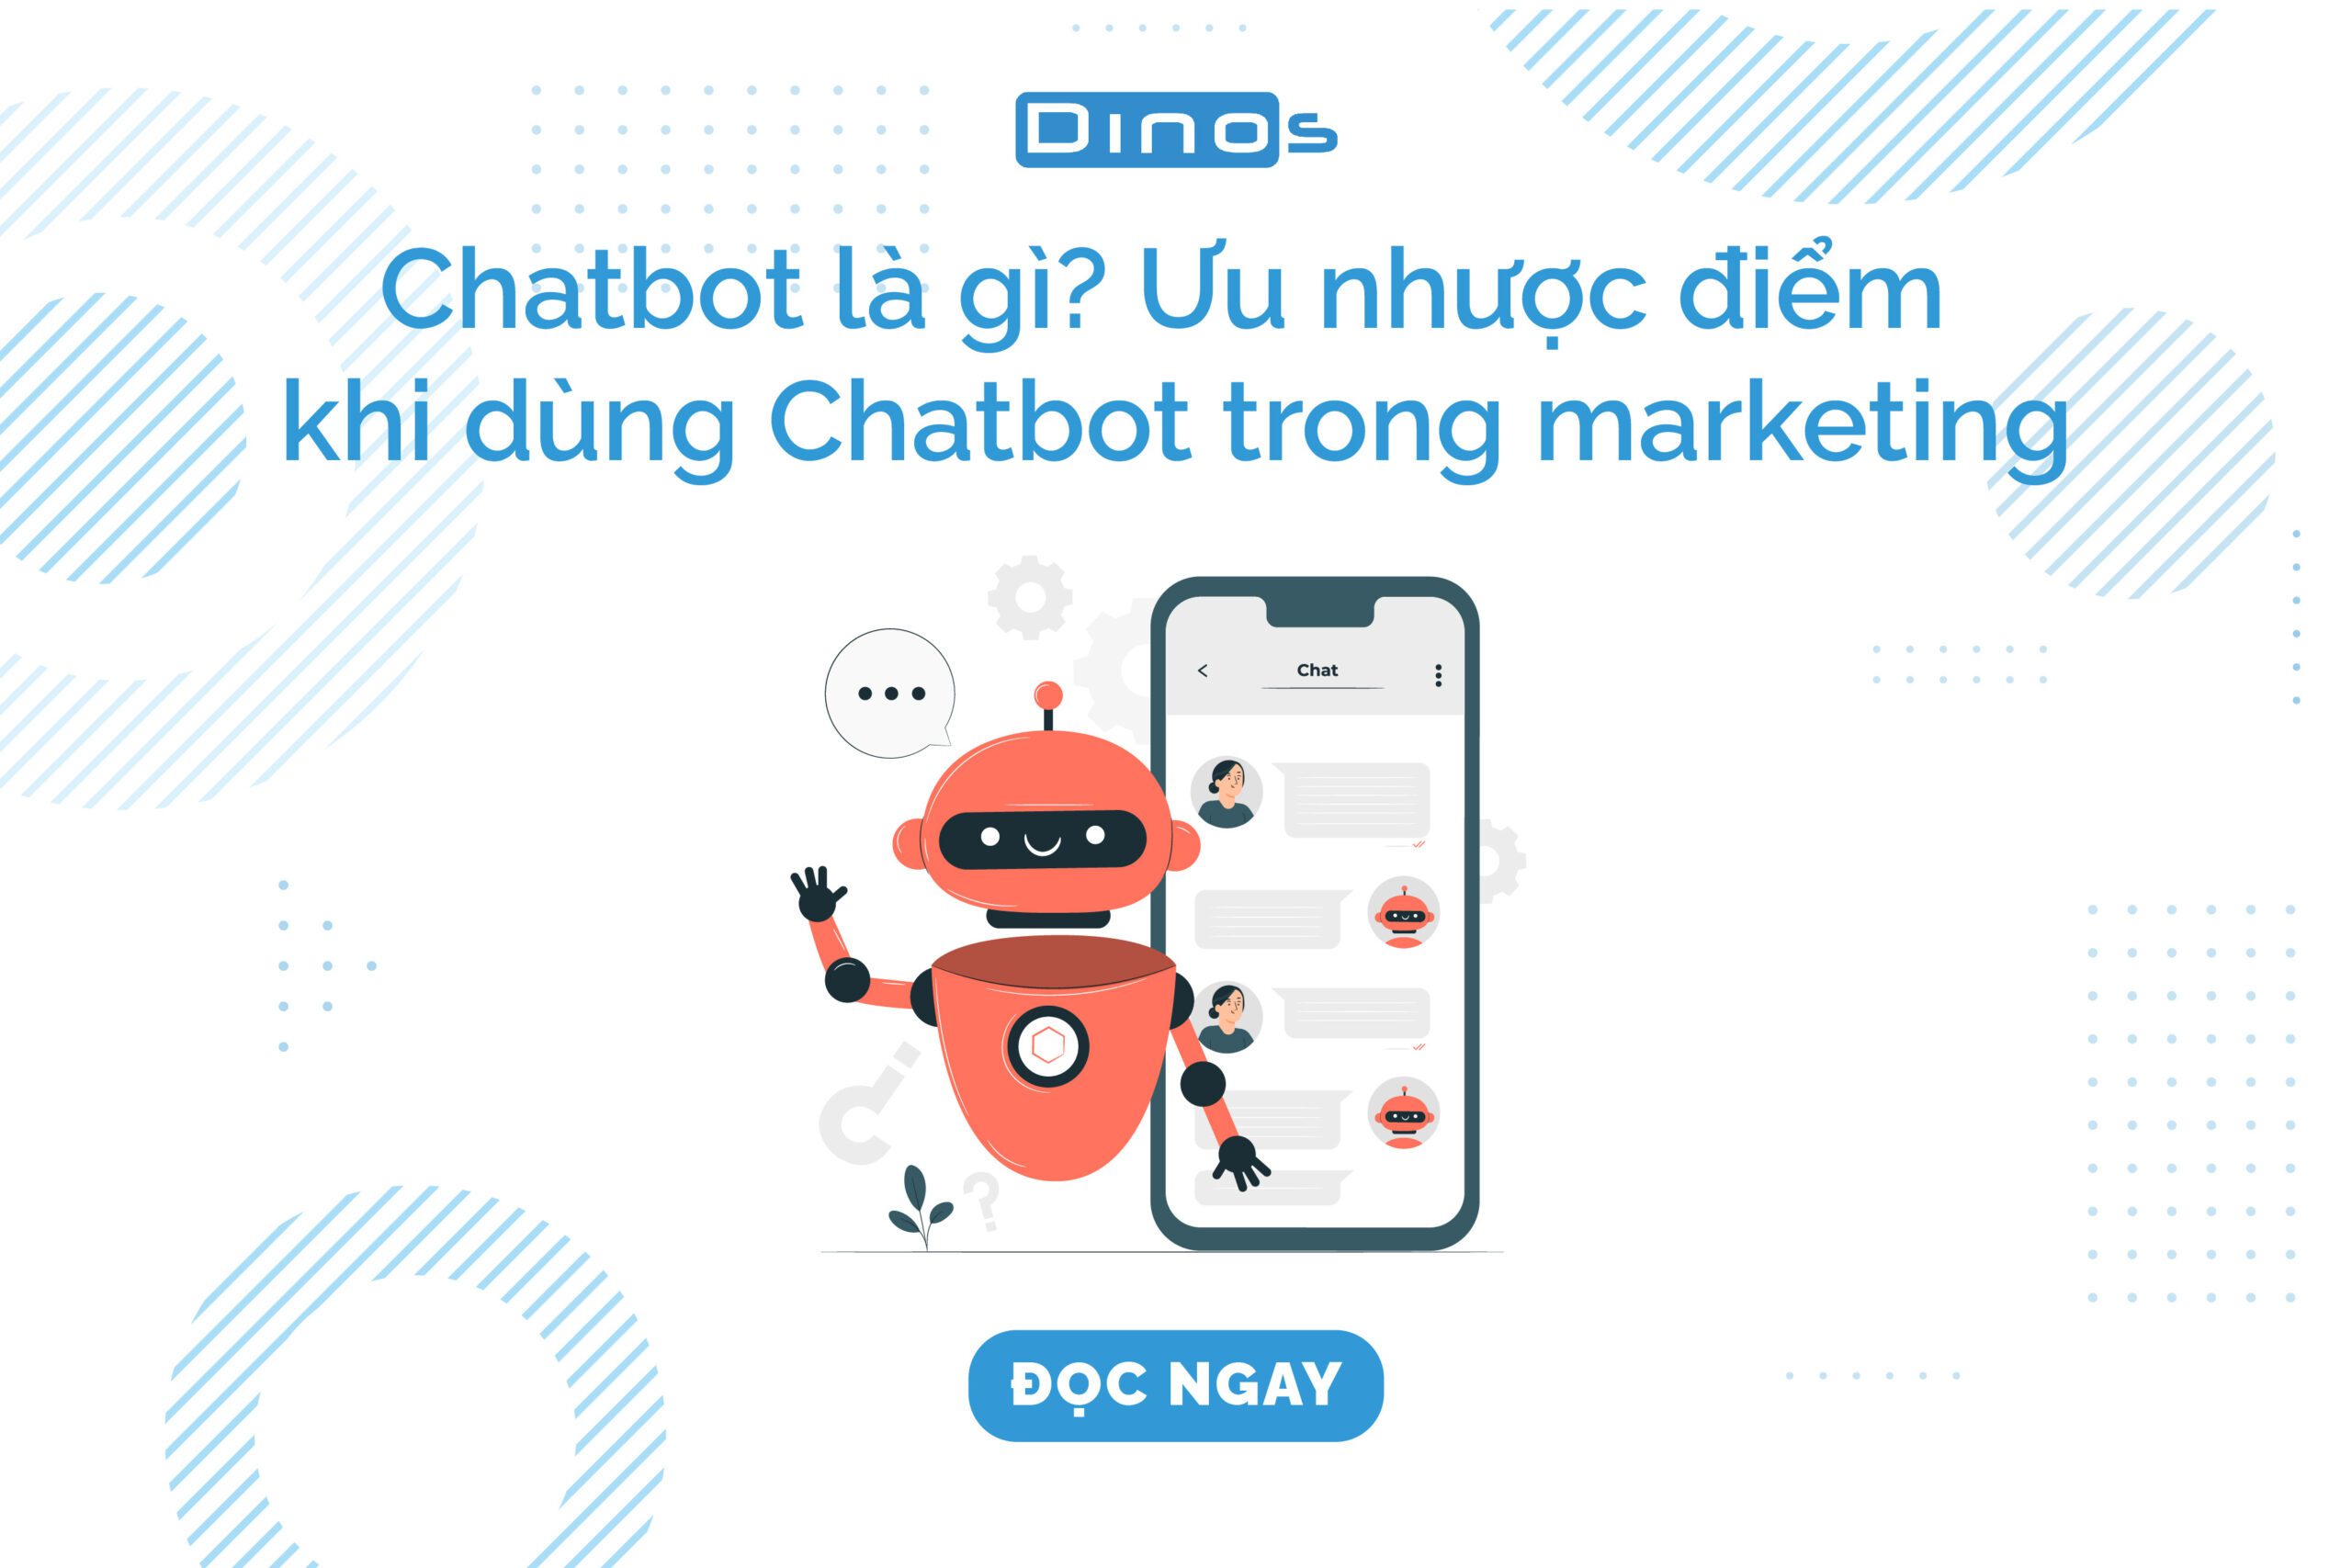 Chatbot là gì? Ưu nhược điểm khi dùng Chatbot trong marketing